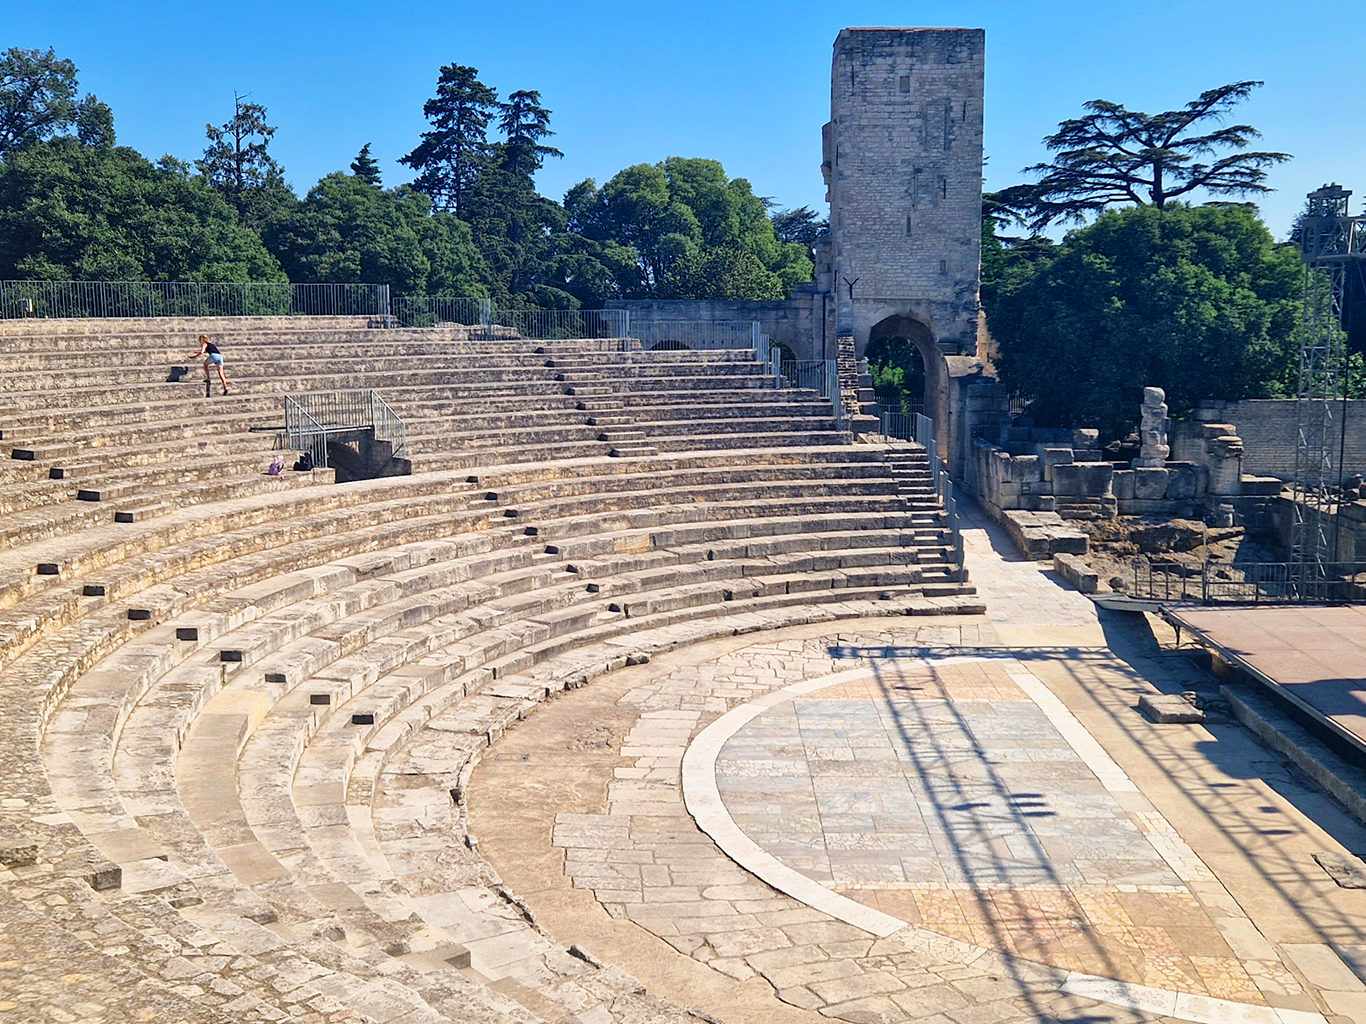 Zachovalý římský amfiteátr "Les Arénes" v Arles